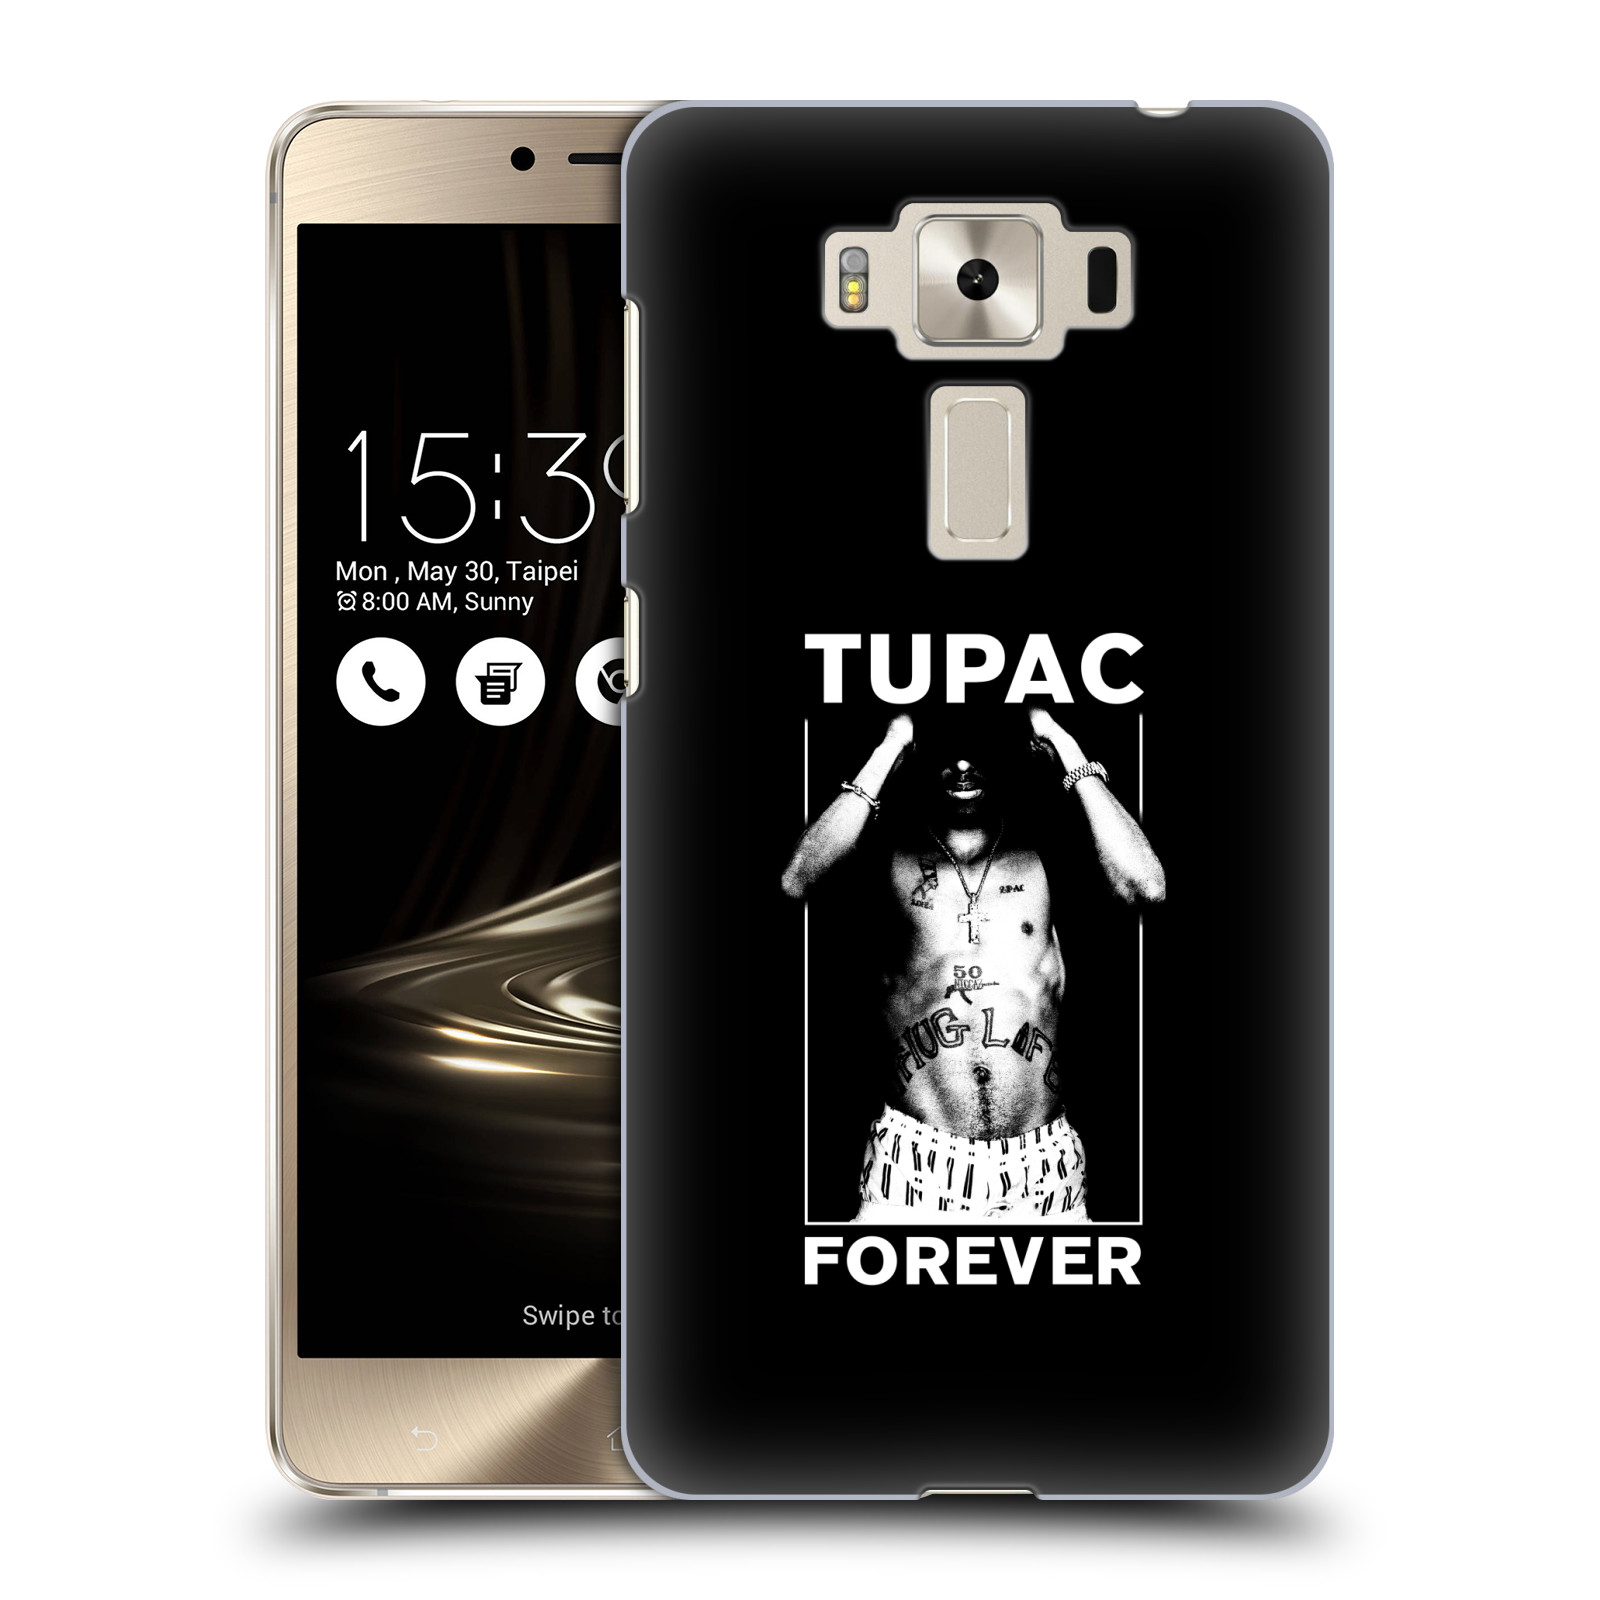 HEAD CASE plastový obal na mobil Asus Zenfone 3 DELUXE ZS550KL Zpěvák rapper Tupac Shakur 2Pac bílý popisek FOREVER